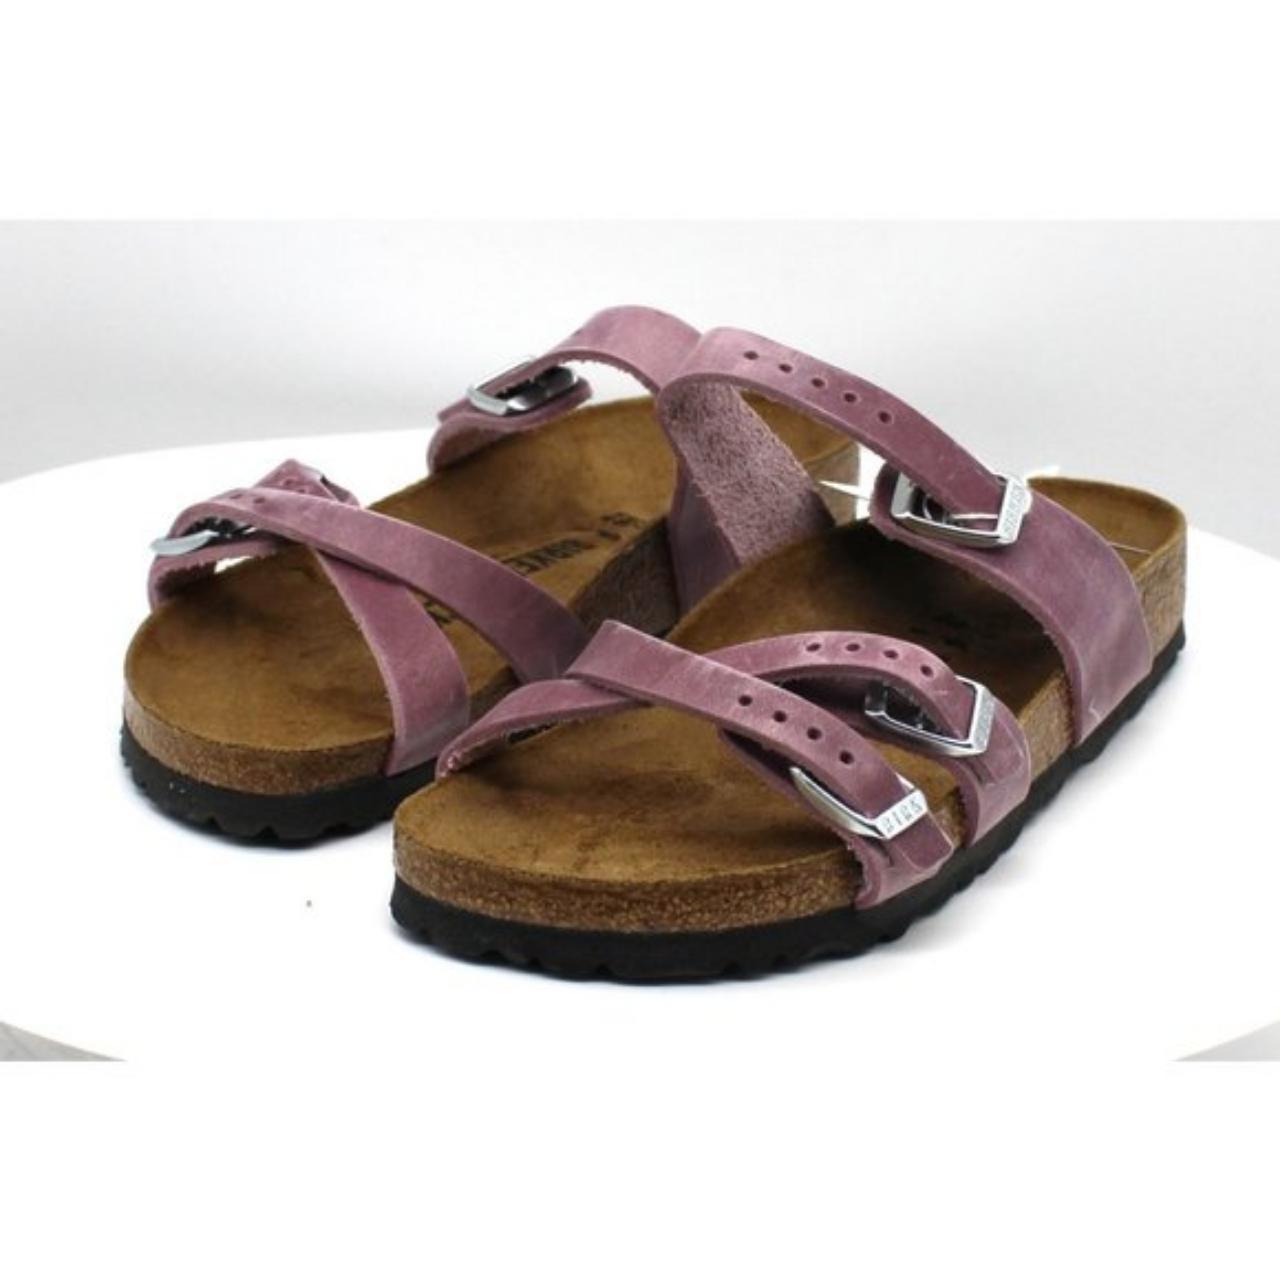 Product Image 2 - Women's Birkenstock Franca Slide Sandal

Built